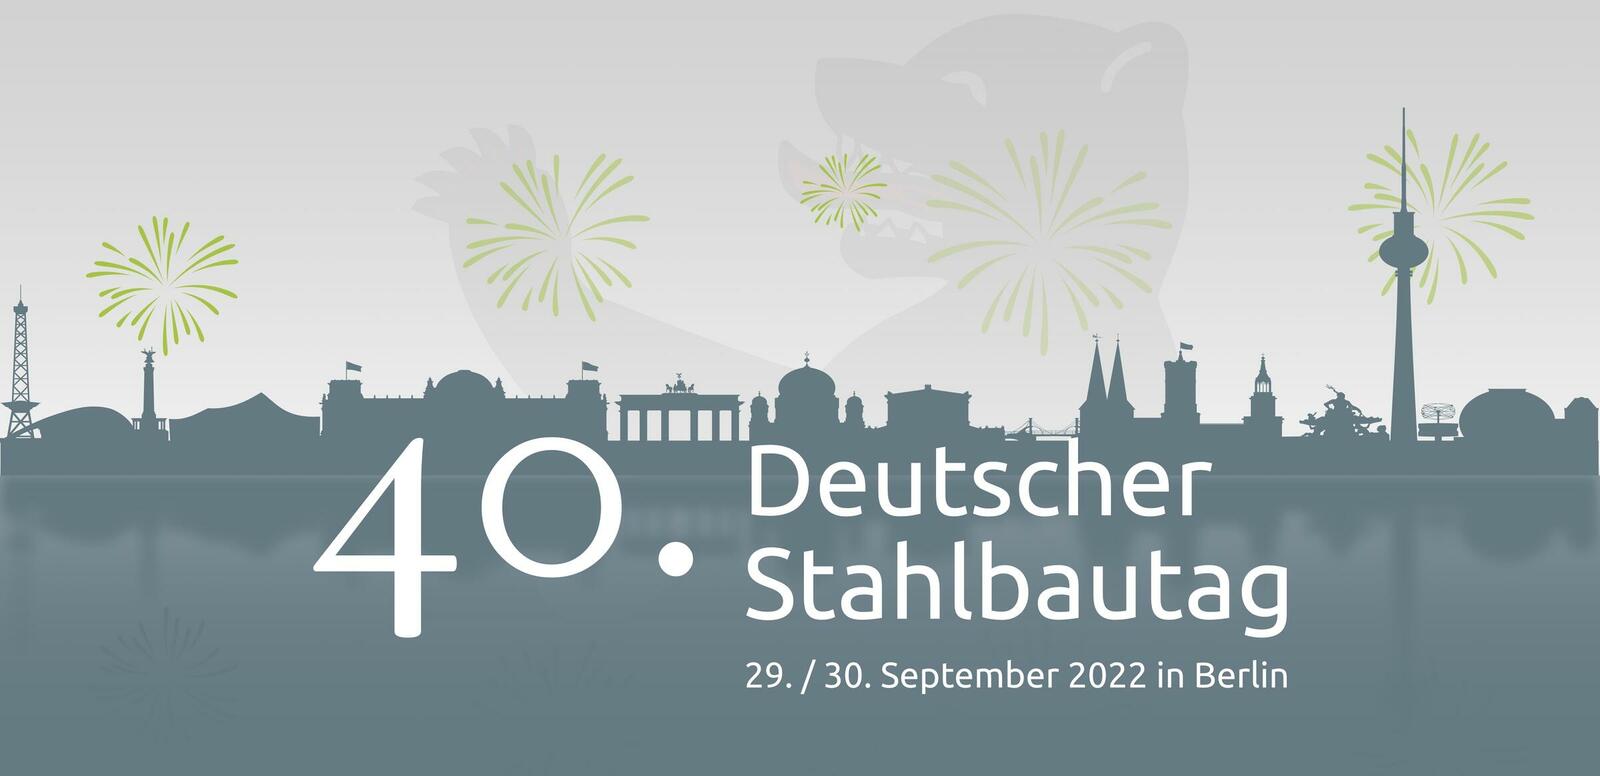 Im September findet der 40. Deutsche Stahlbautag fest. Das Programm ist bereits jetzt online einsehbar.